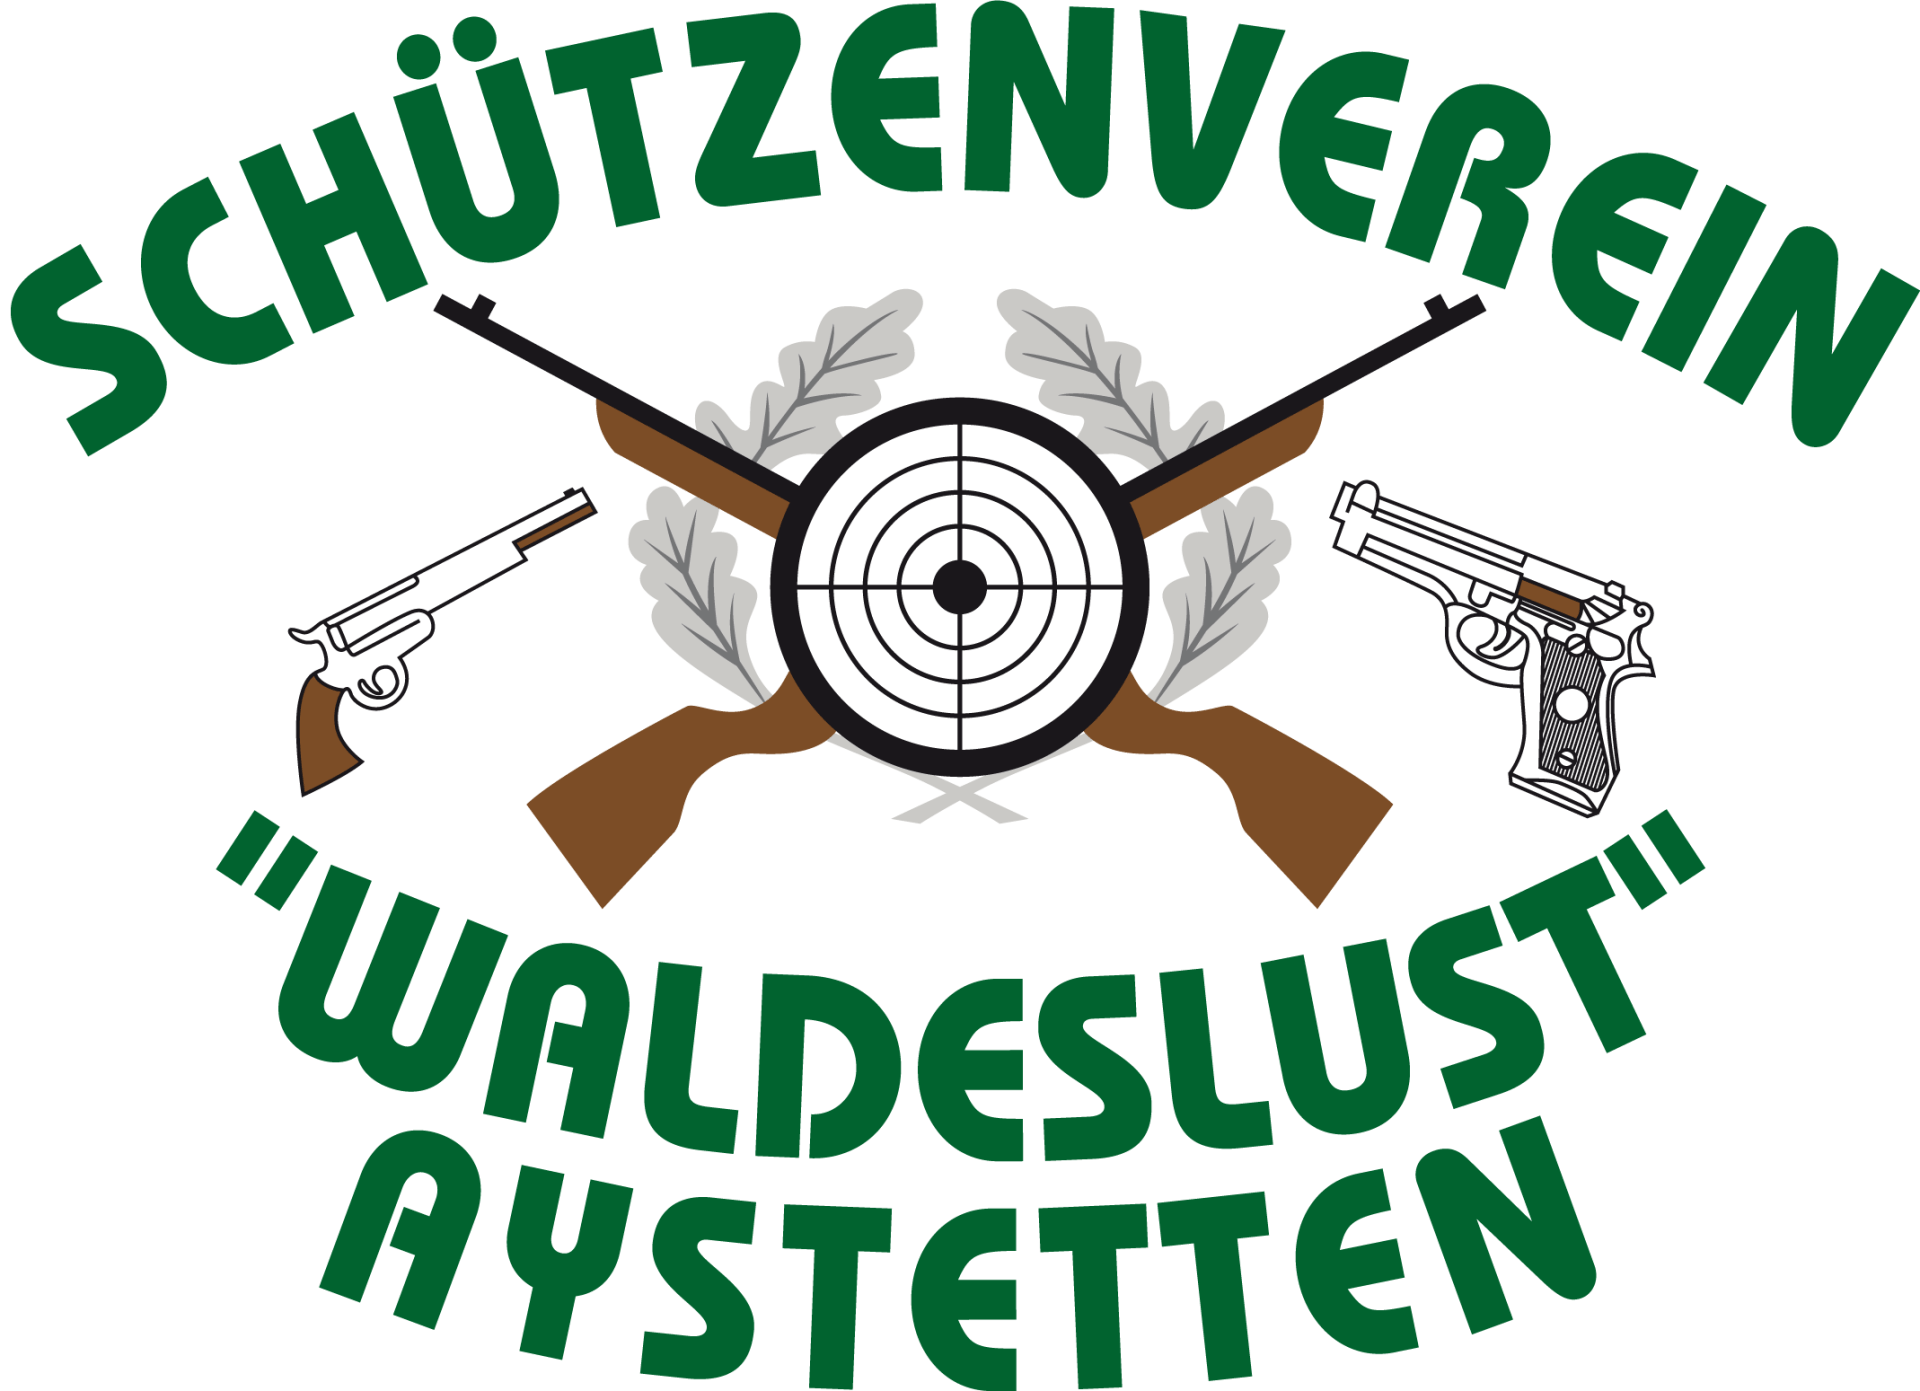 Schützenverein Waldeslust Aystetten